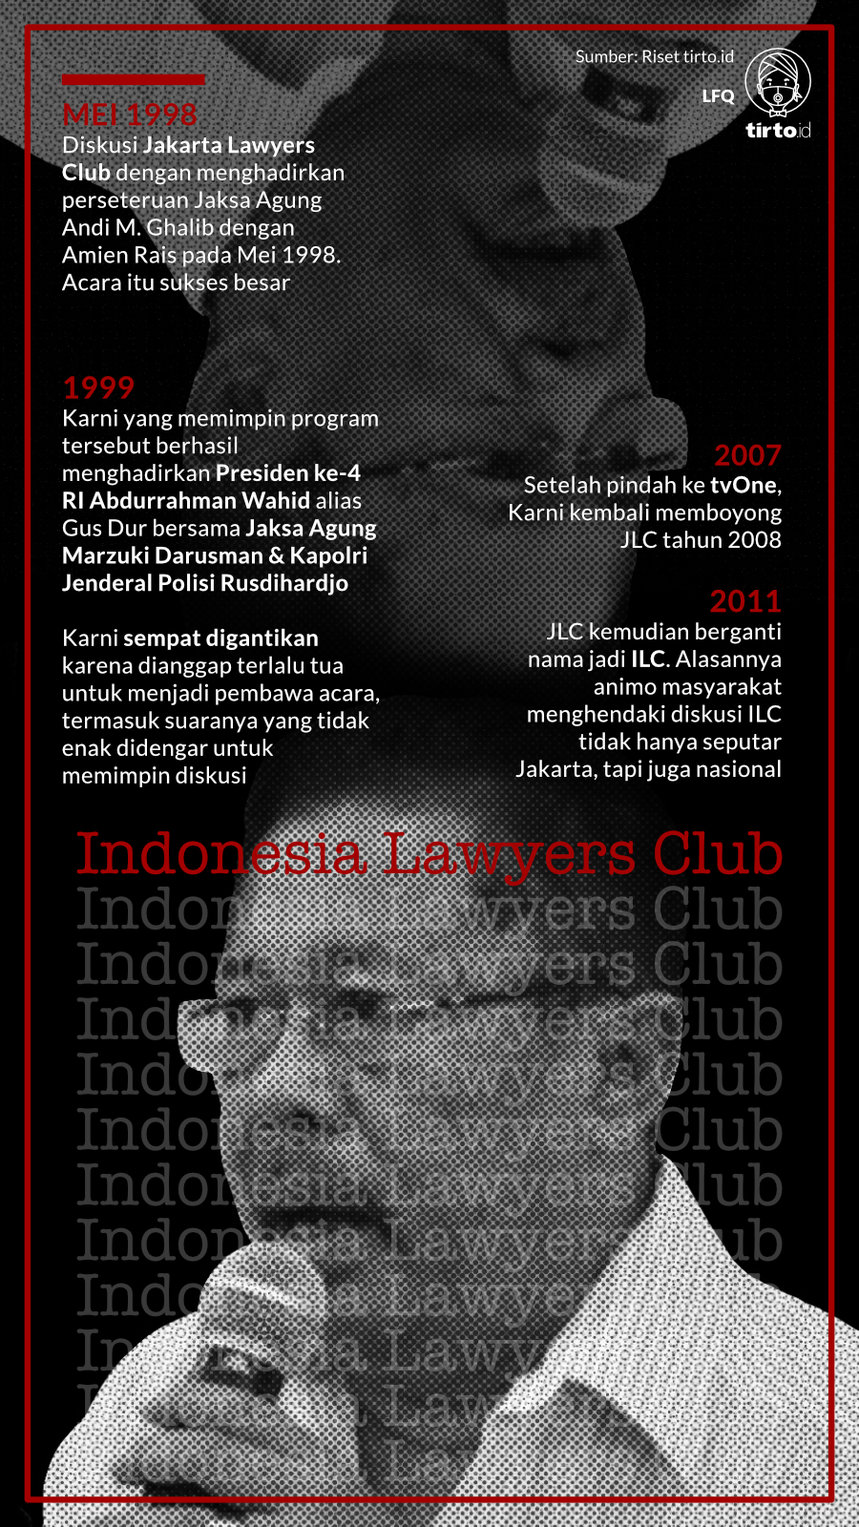 Infografik Indonesia Lawyers Club